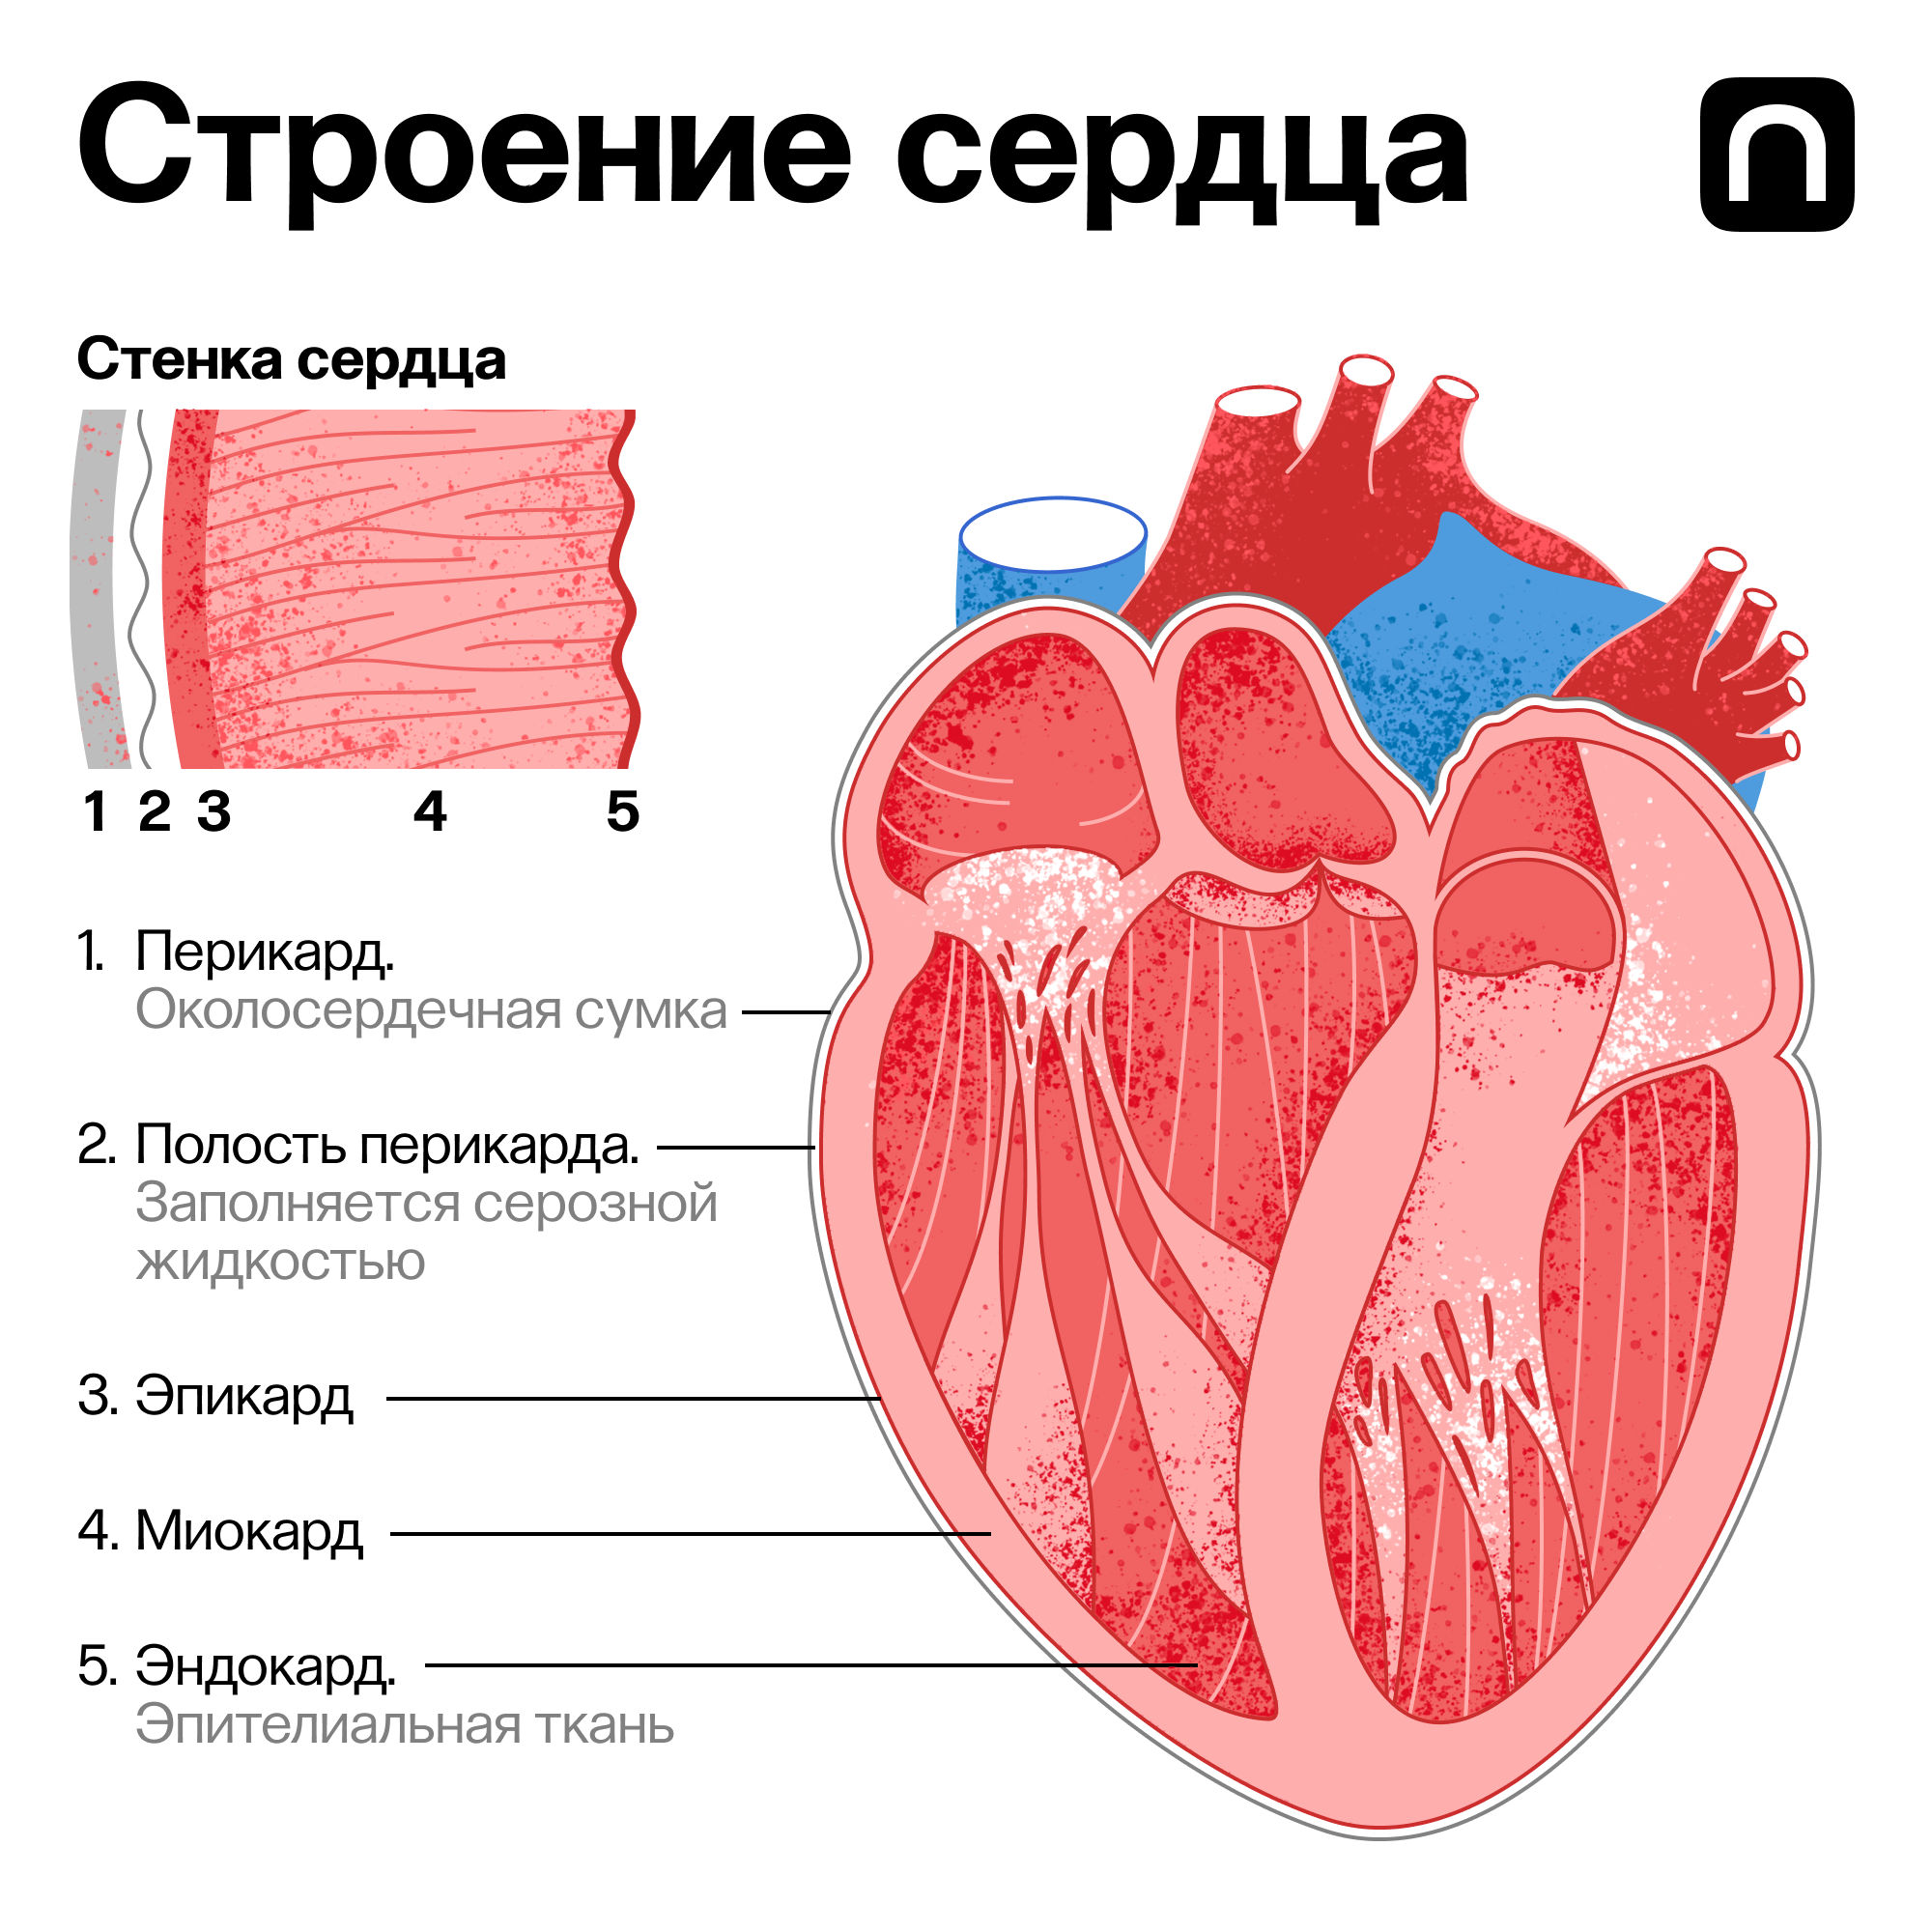 Сердечная мышца представлена тканью. Строение сердца. Строение сердца человека. Сердце и сердечная мышца.